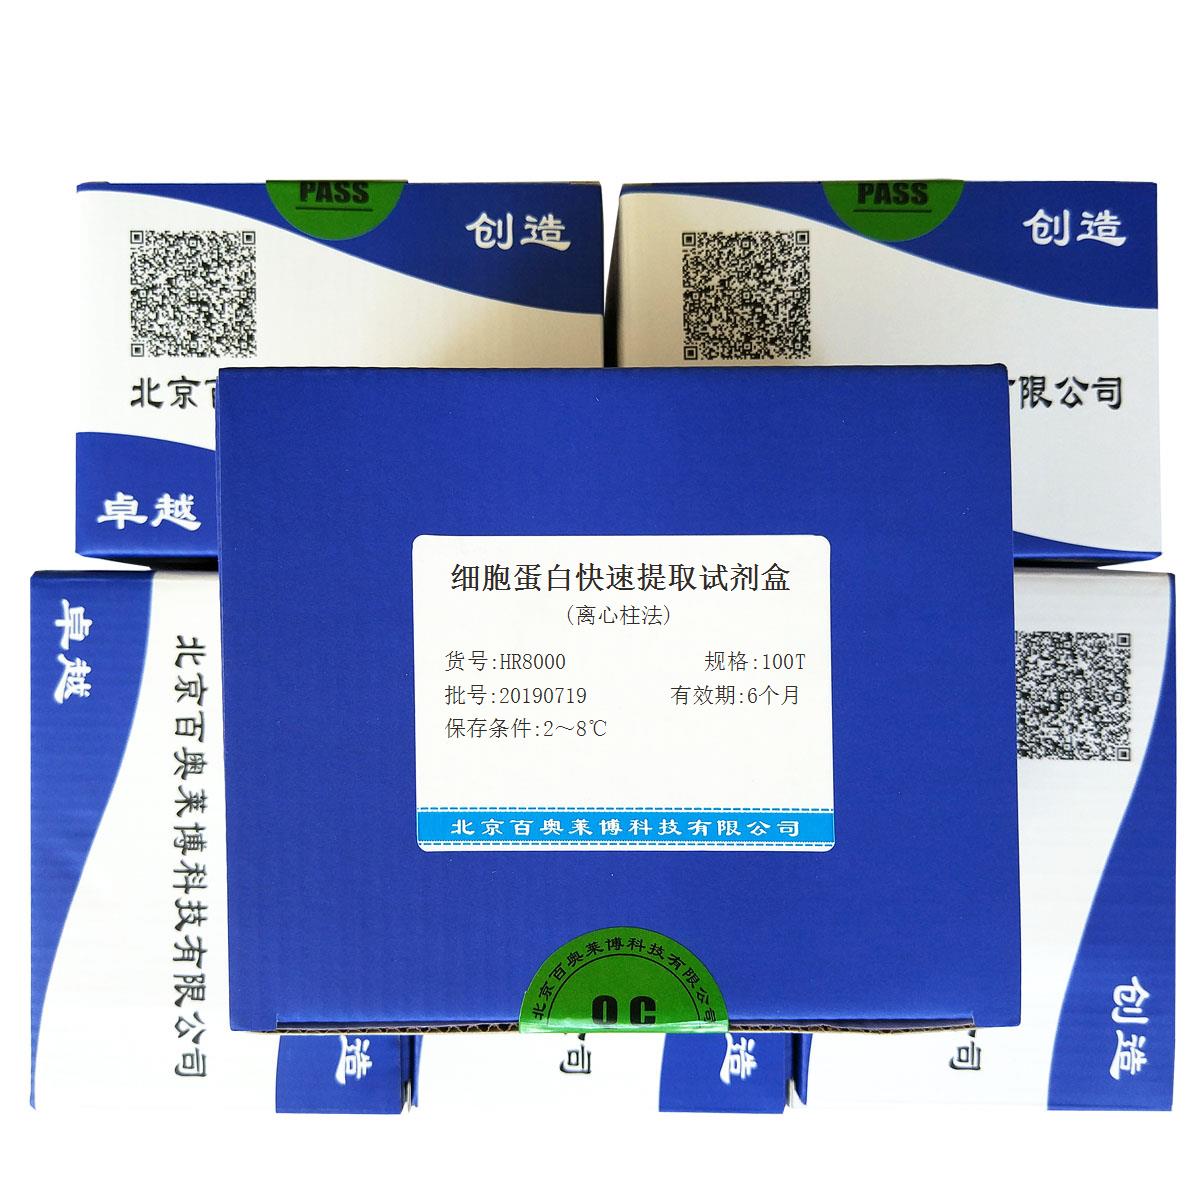 细胞蛋白快速提取试剂盒(离心柱法)北京供应商